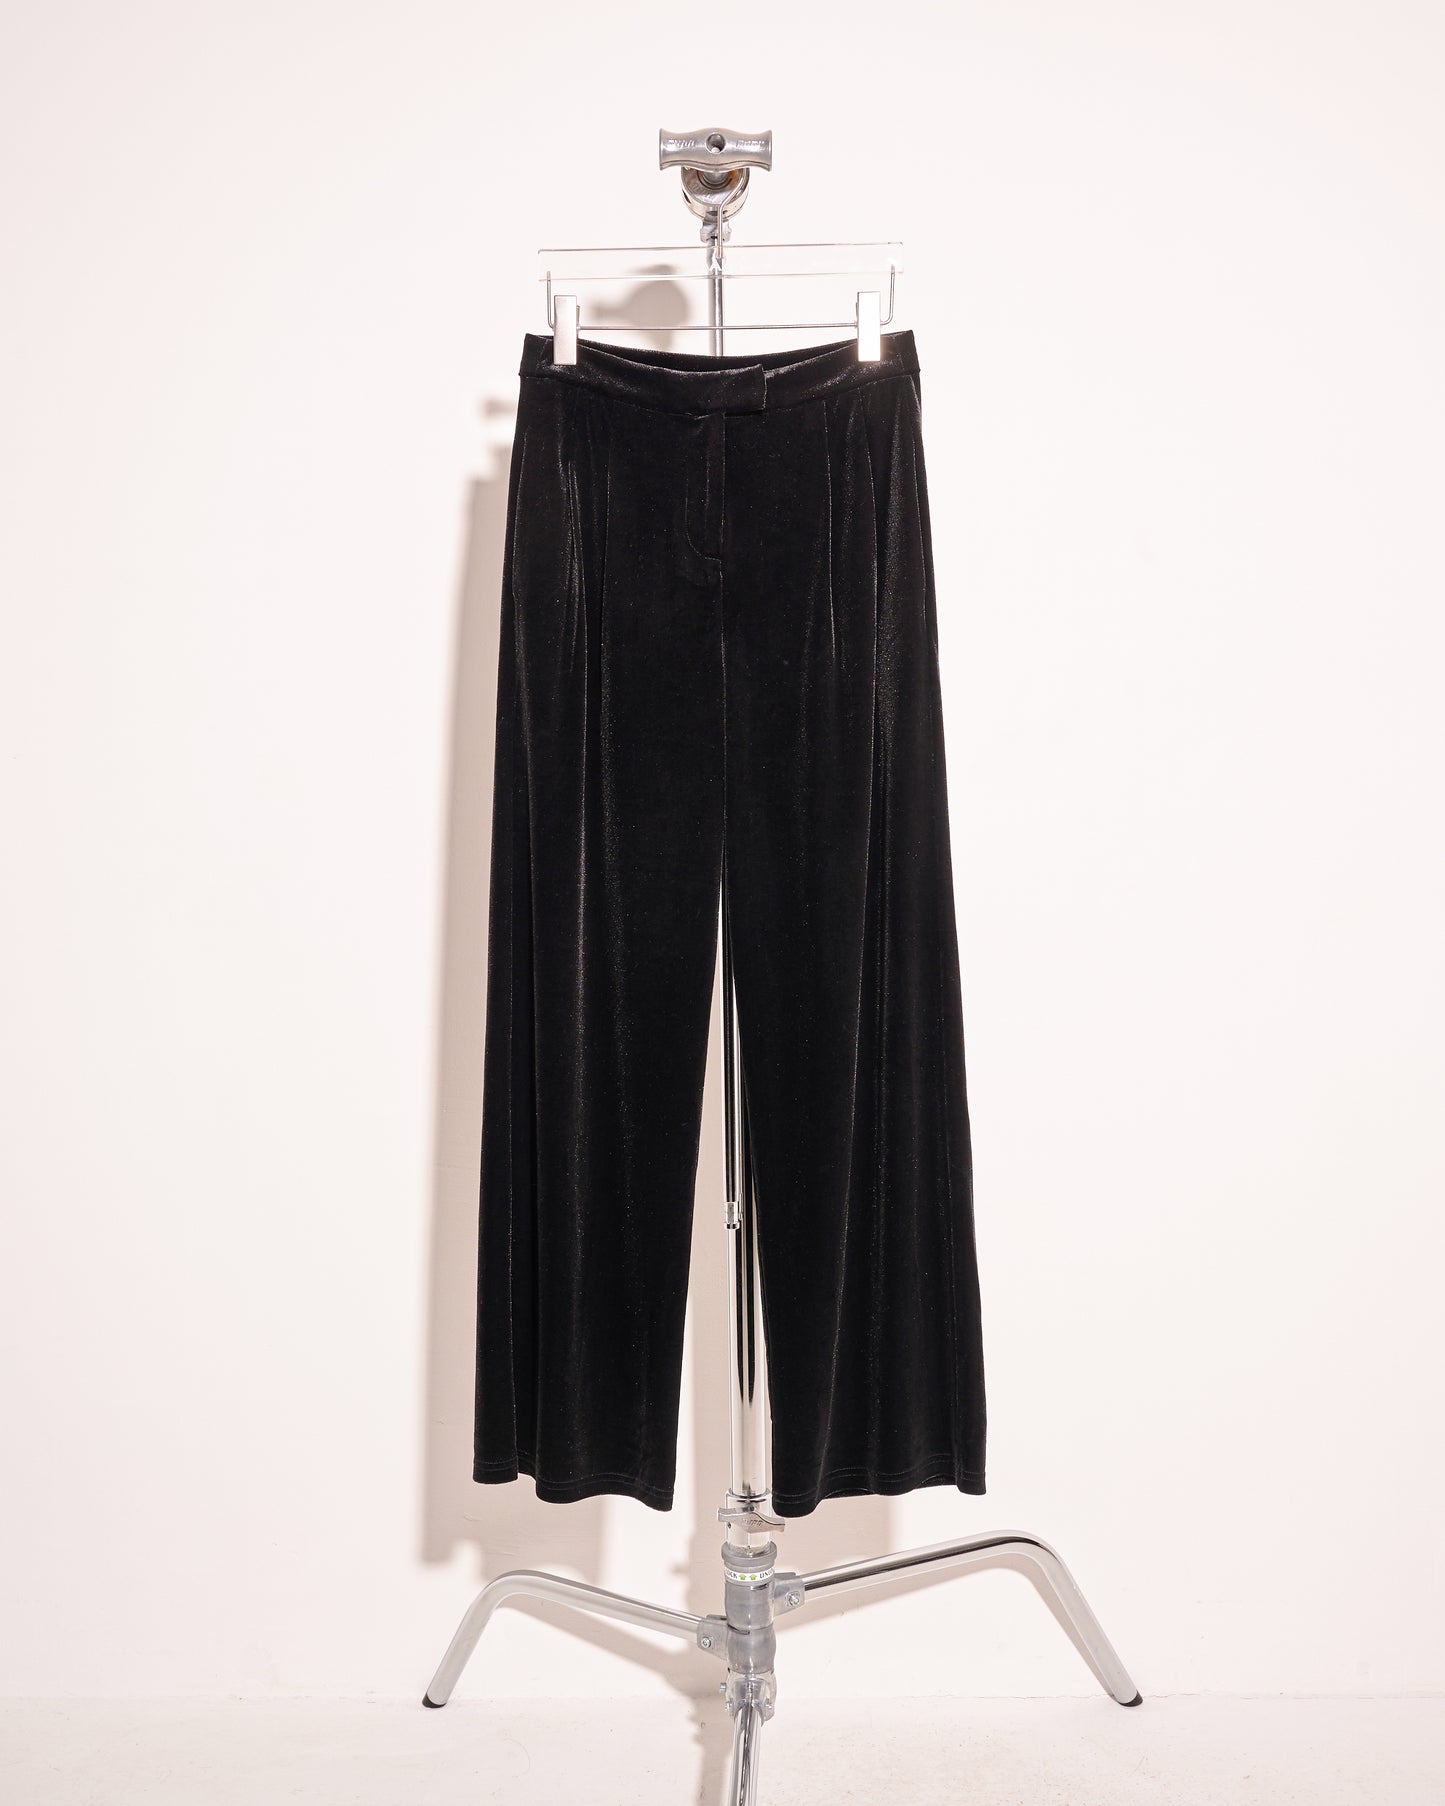 aalis TIO velvet pants (Black velvet) –